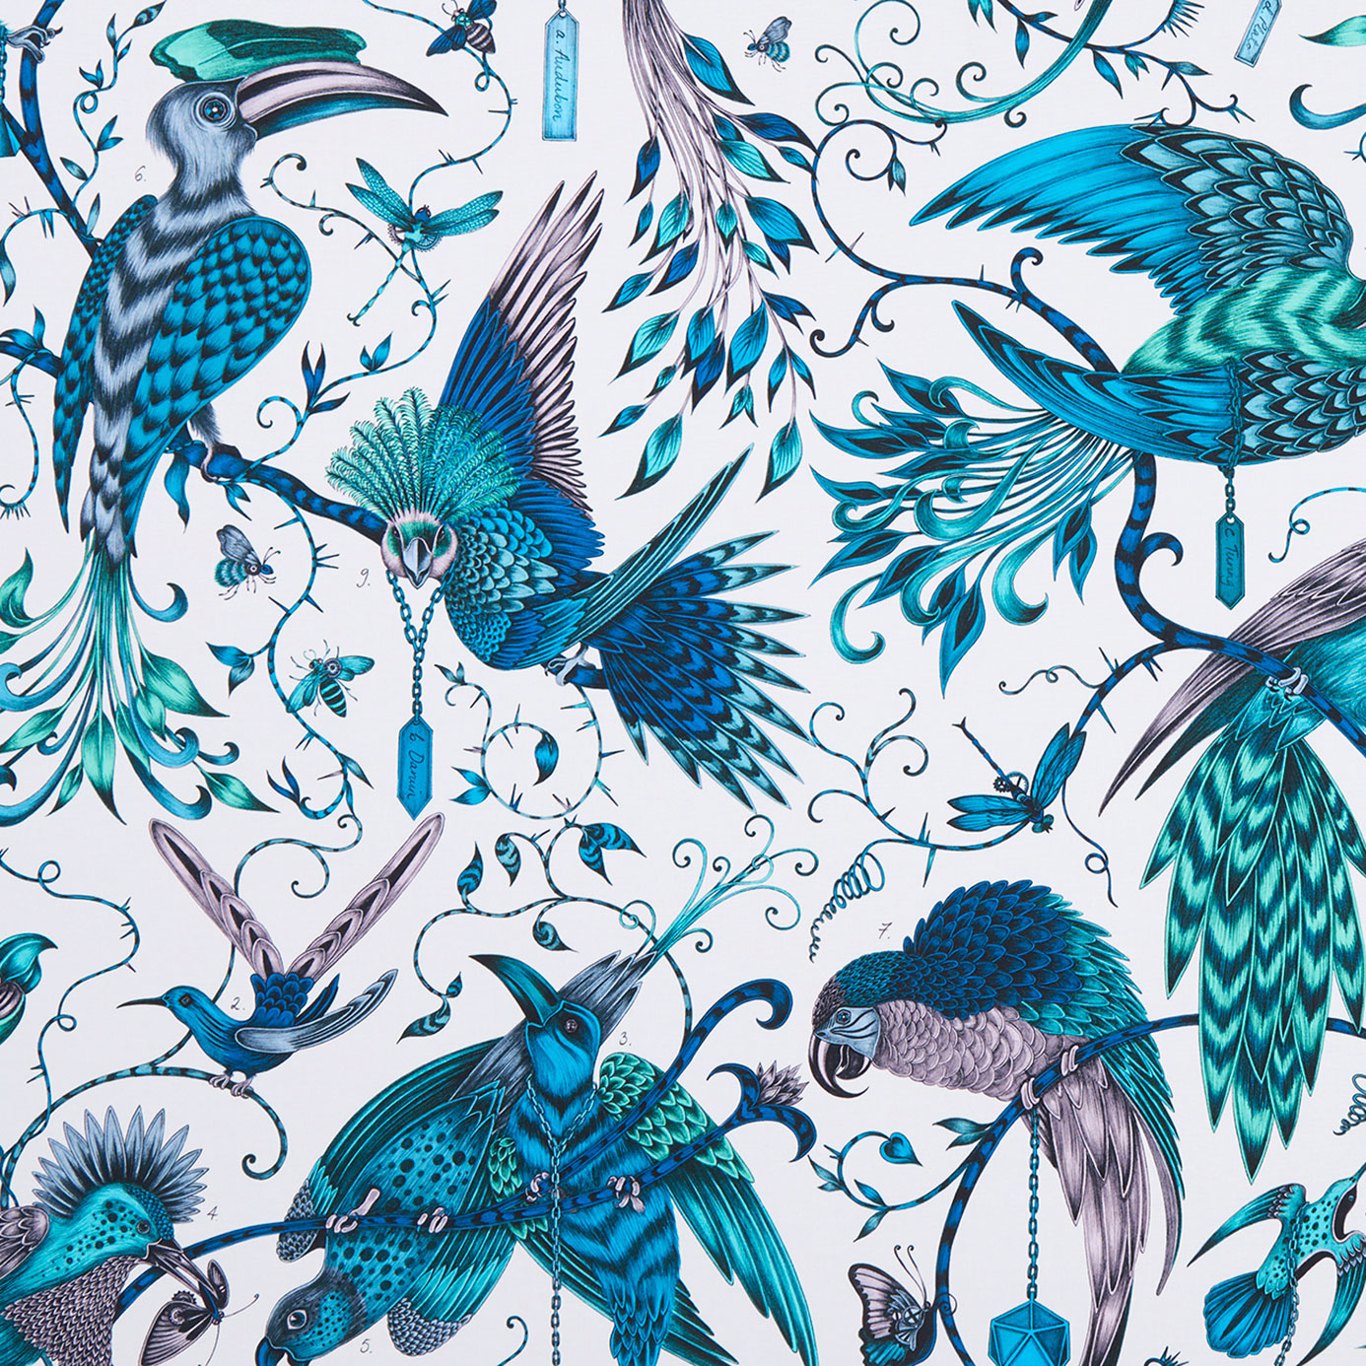 Audubon Jungle Fabric by EMS